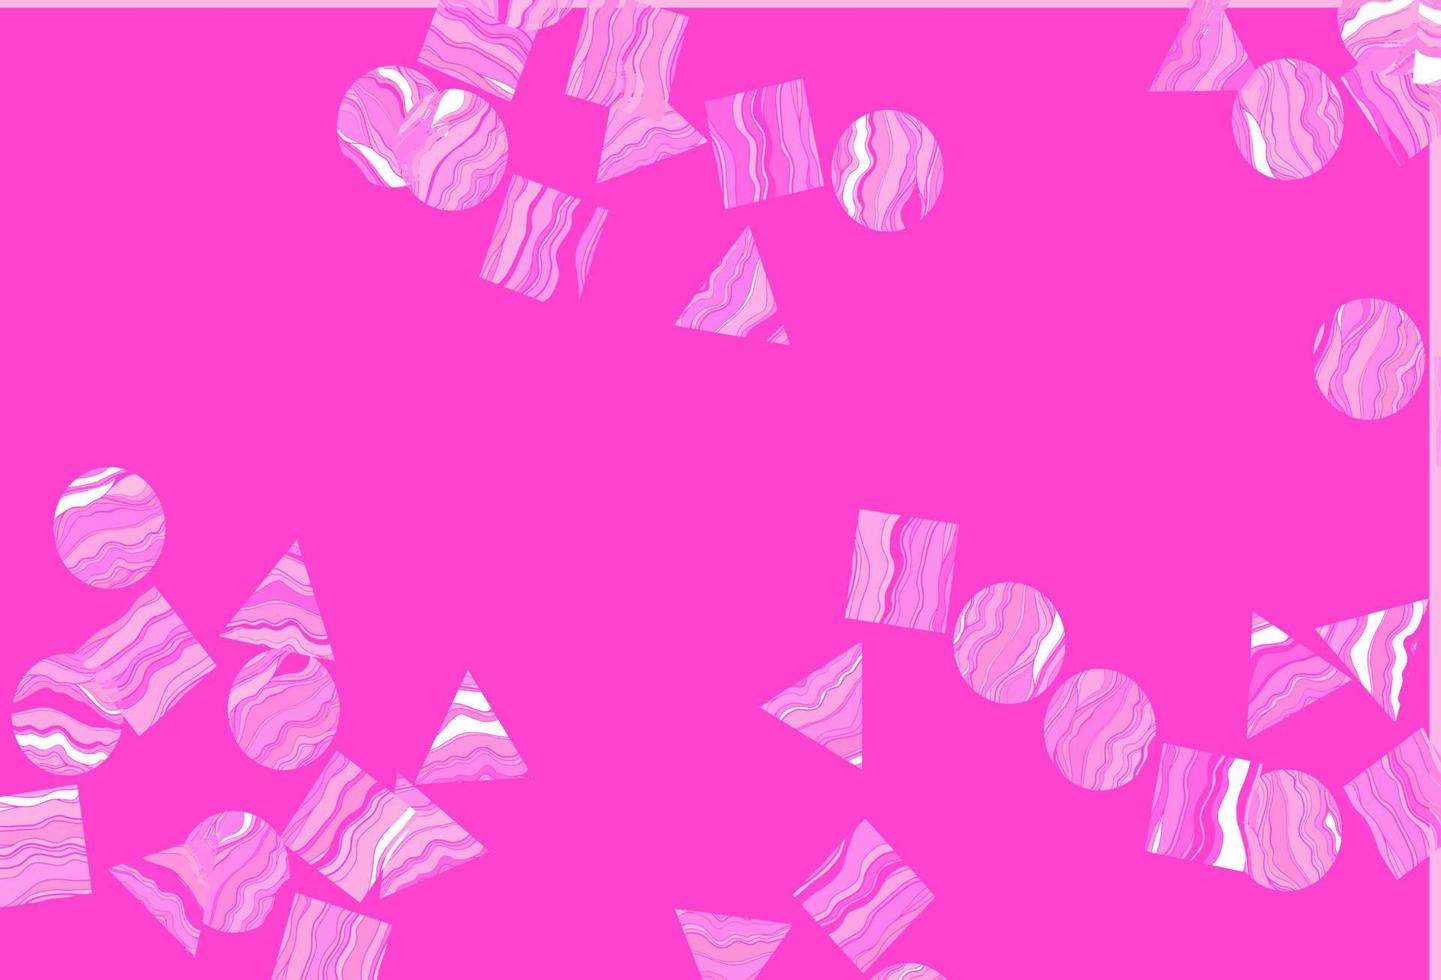 sfondo vettoriale rosa chiaro con linee, cerchi, rombi.